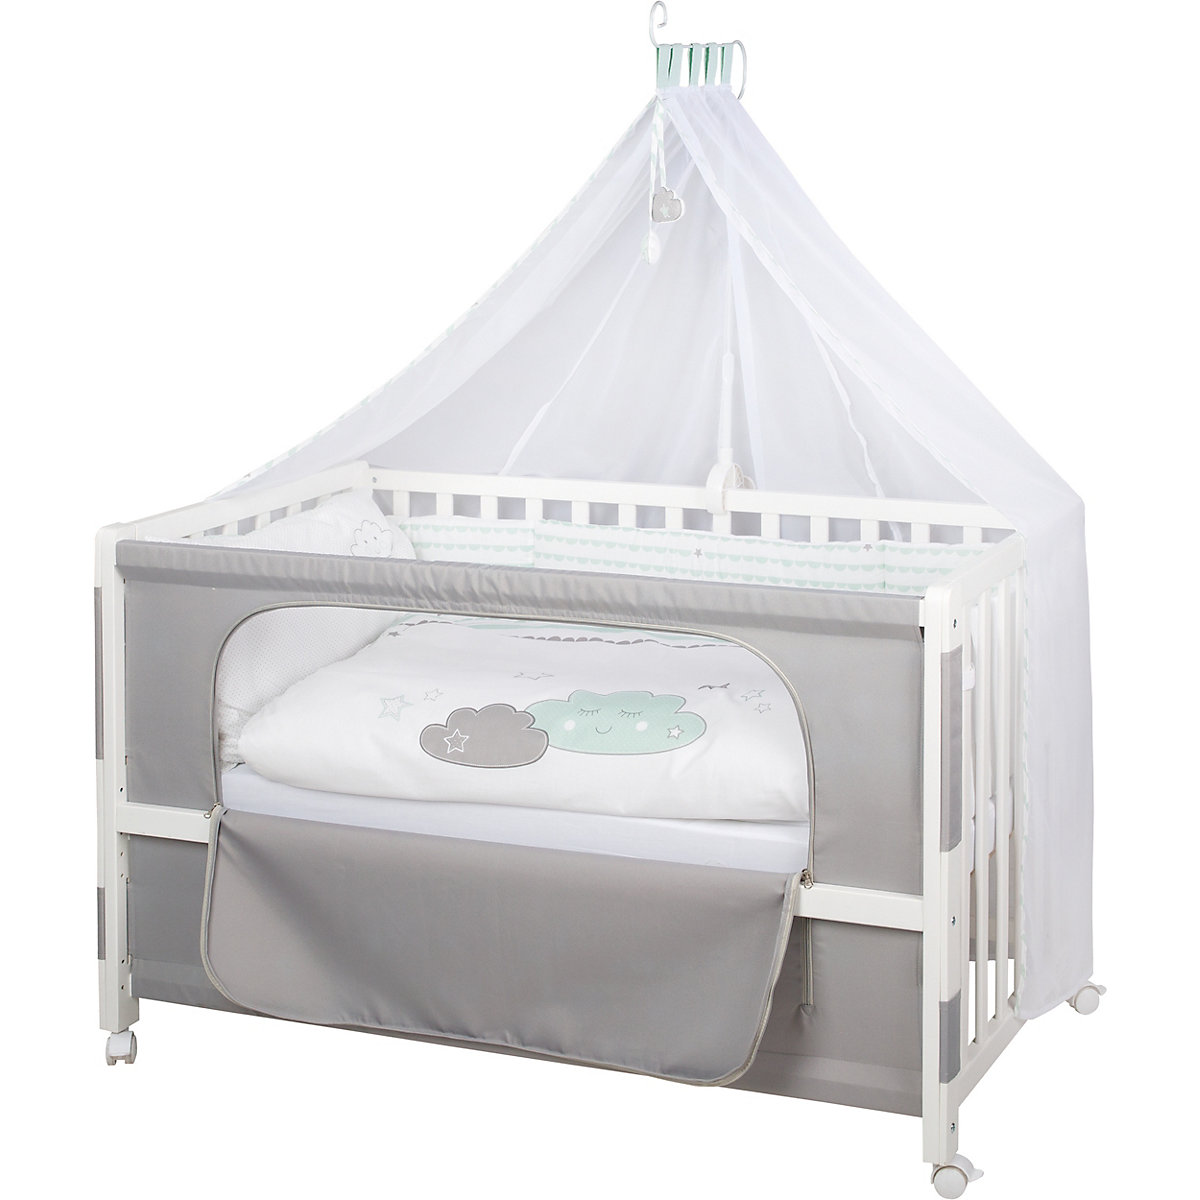 Roba Beistell- und Kinderbett komplett 60 x 120 cm Room Bed Happy Cloud mint/weiß